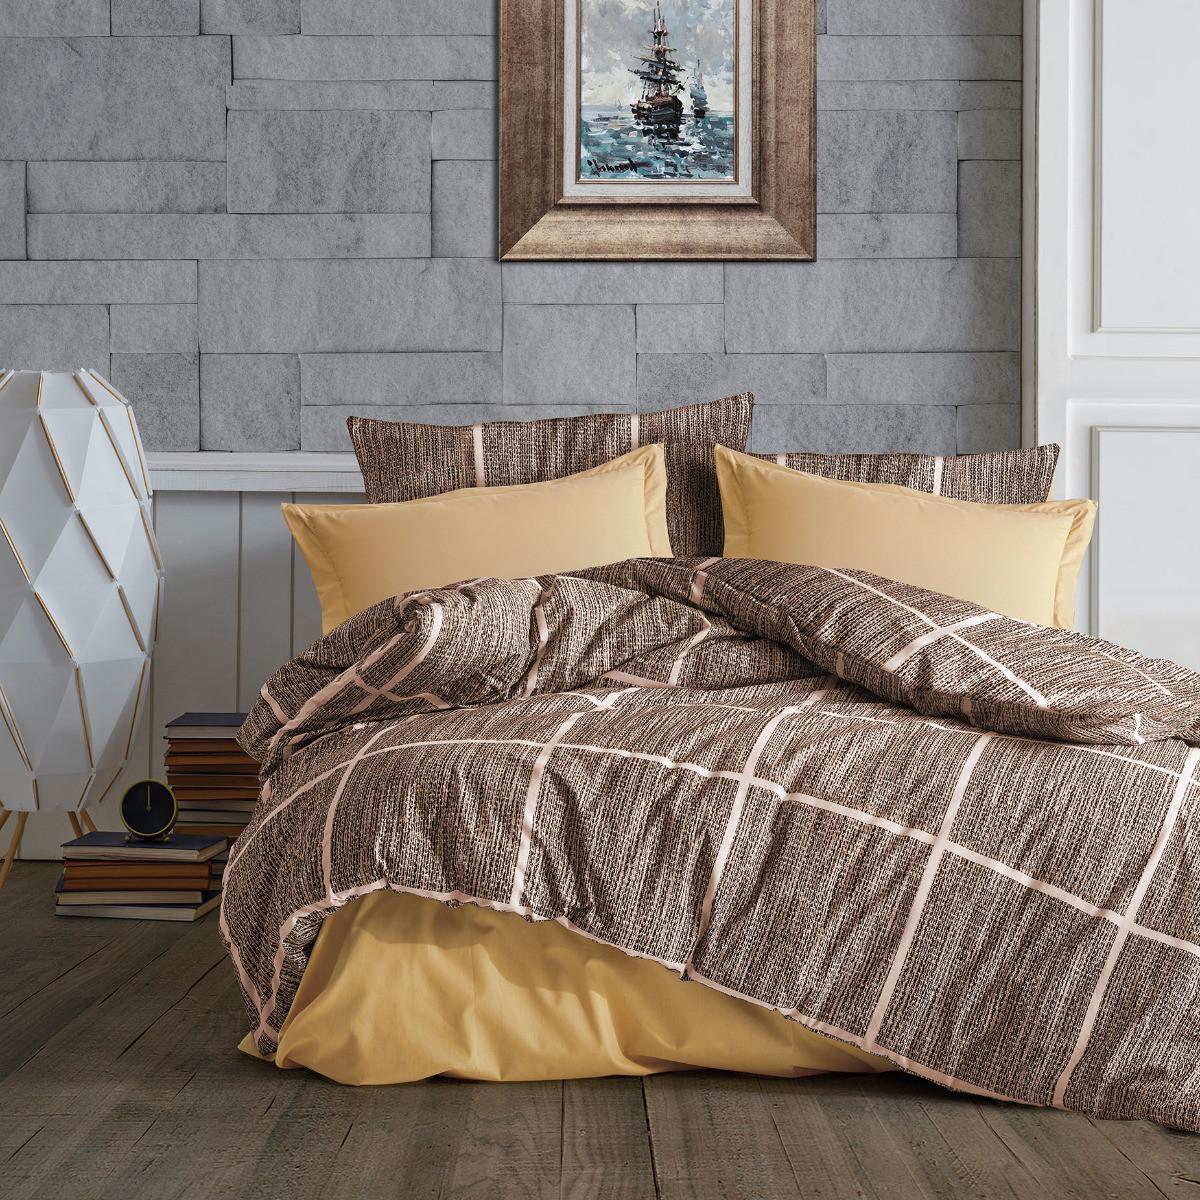 Selected image for Mille Notti Ocher Square Pamučna posteljina za bračni ležaj, 200x220 cm, Braon-oker